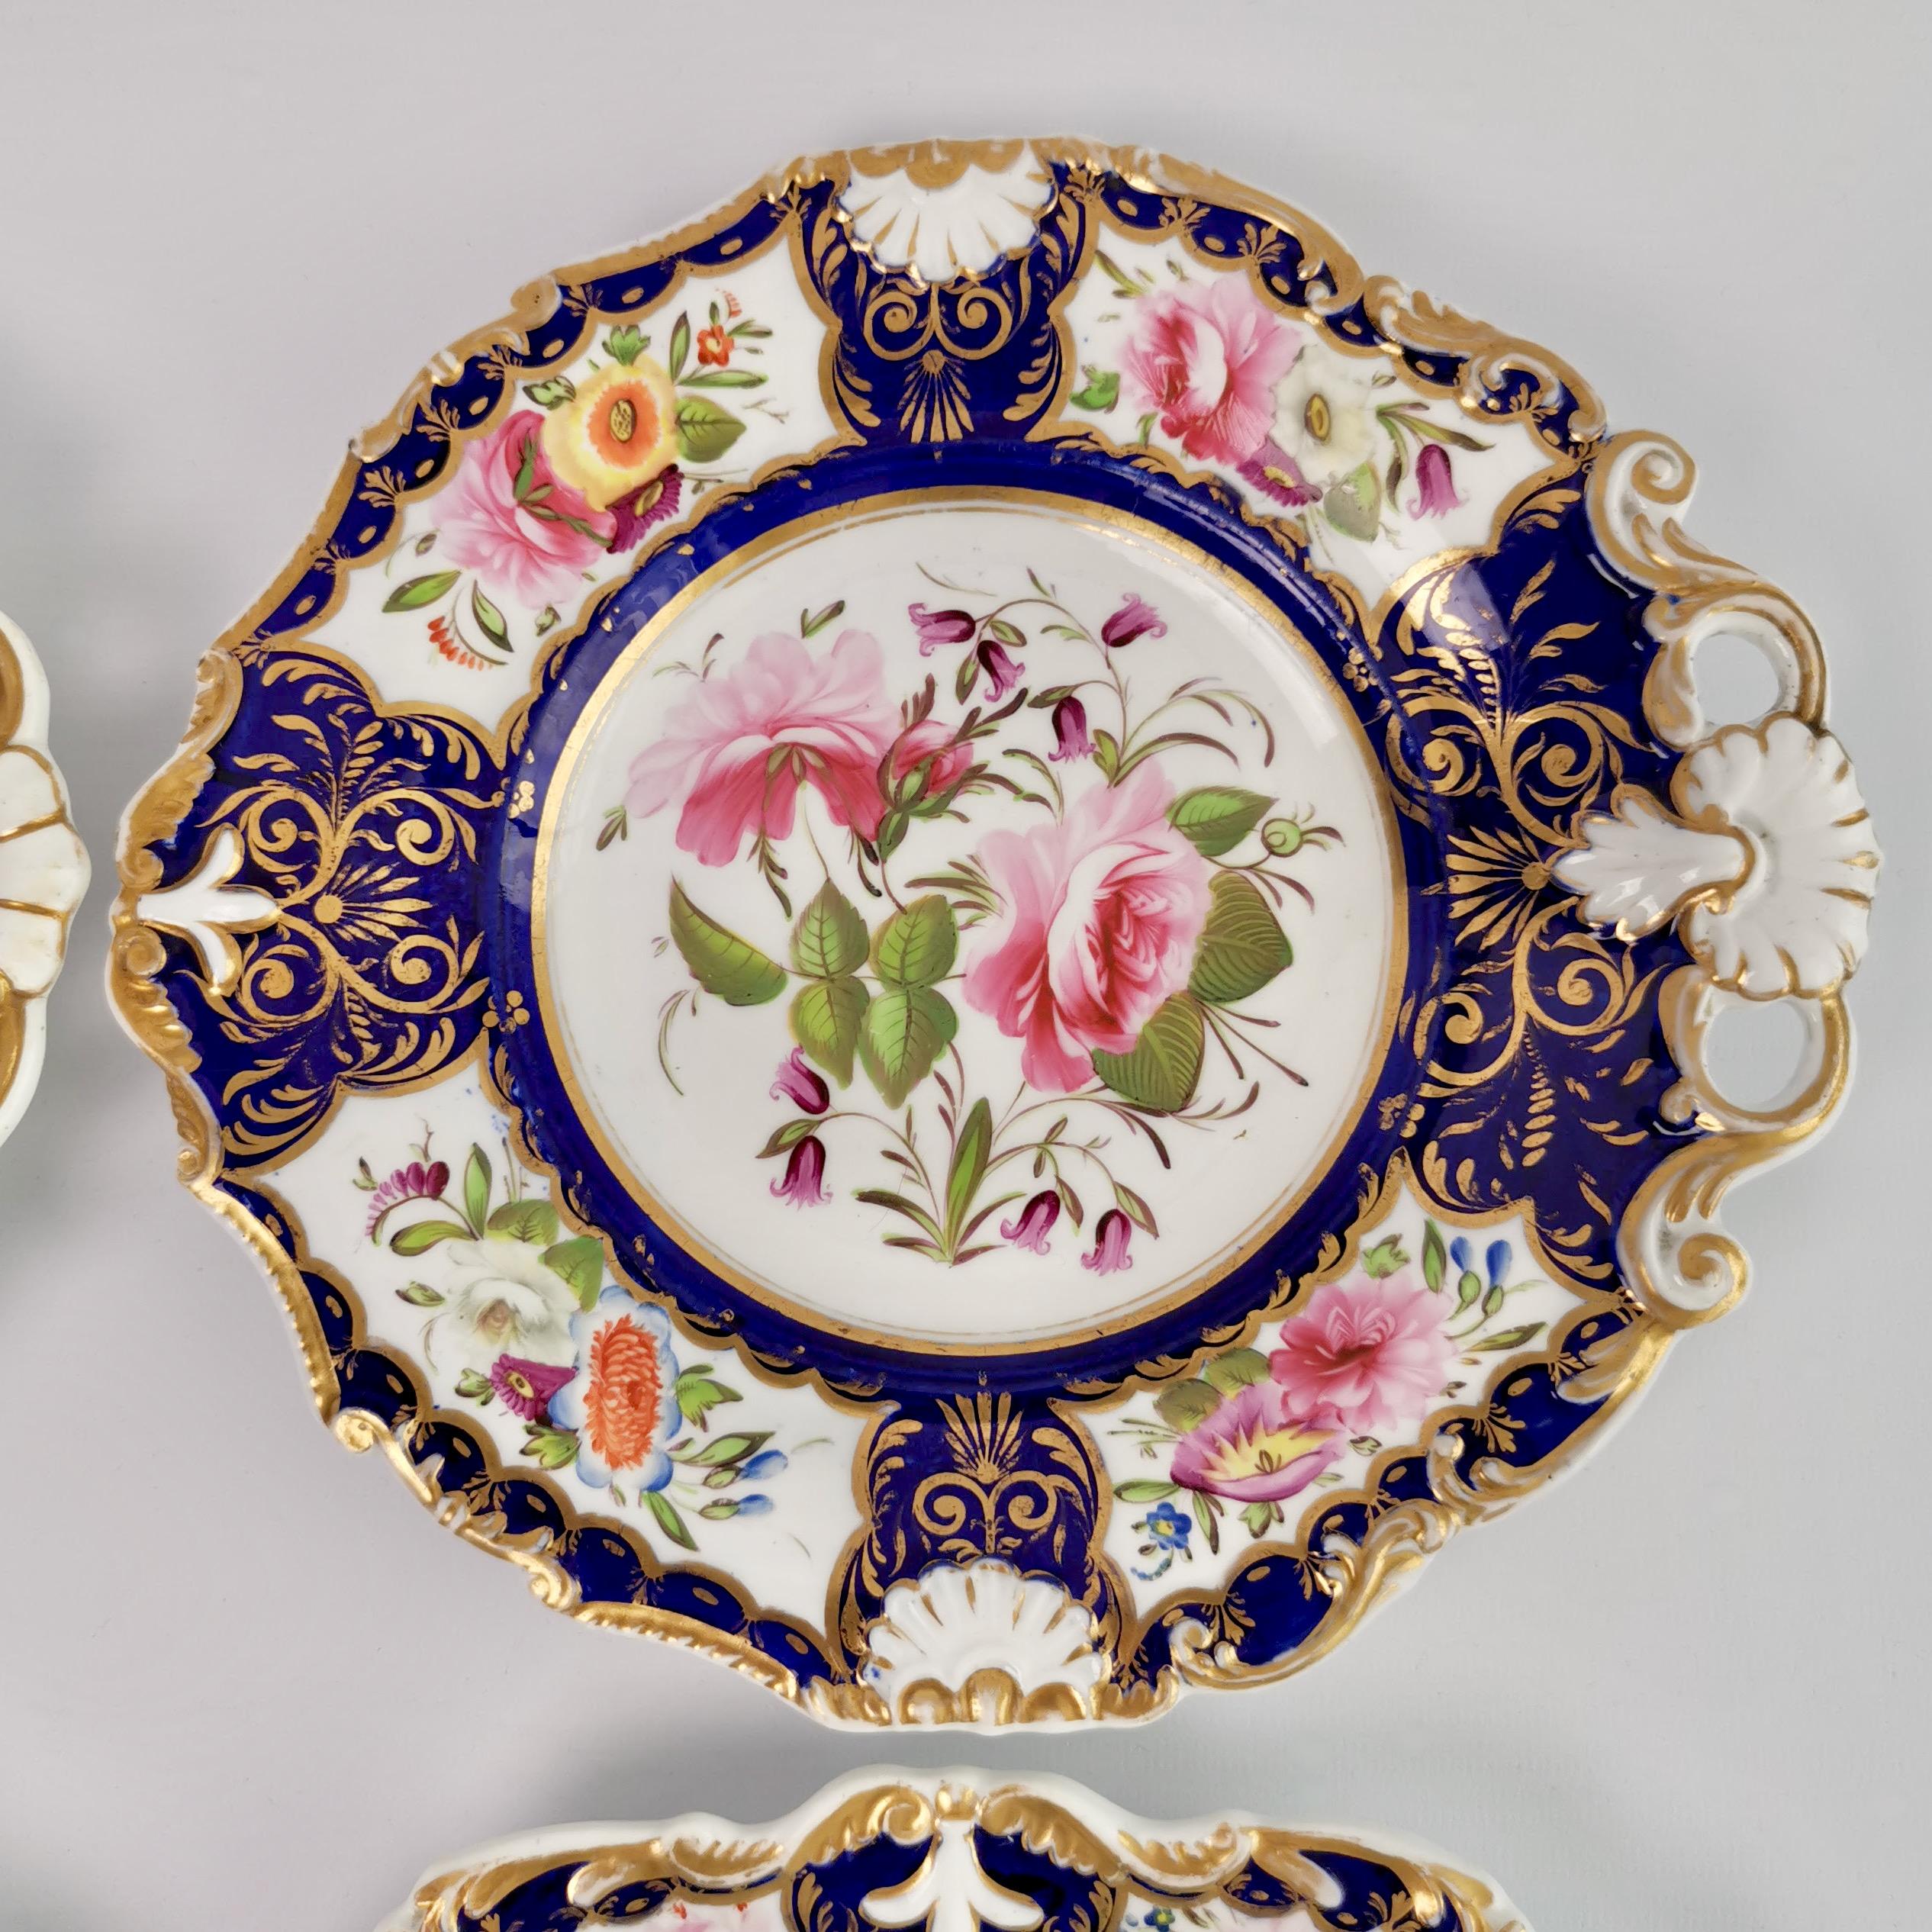 New Hall Porcelain Dessert Service, Cobalt Blue with Flowers, Regency 1824-1830 6